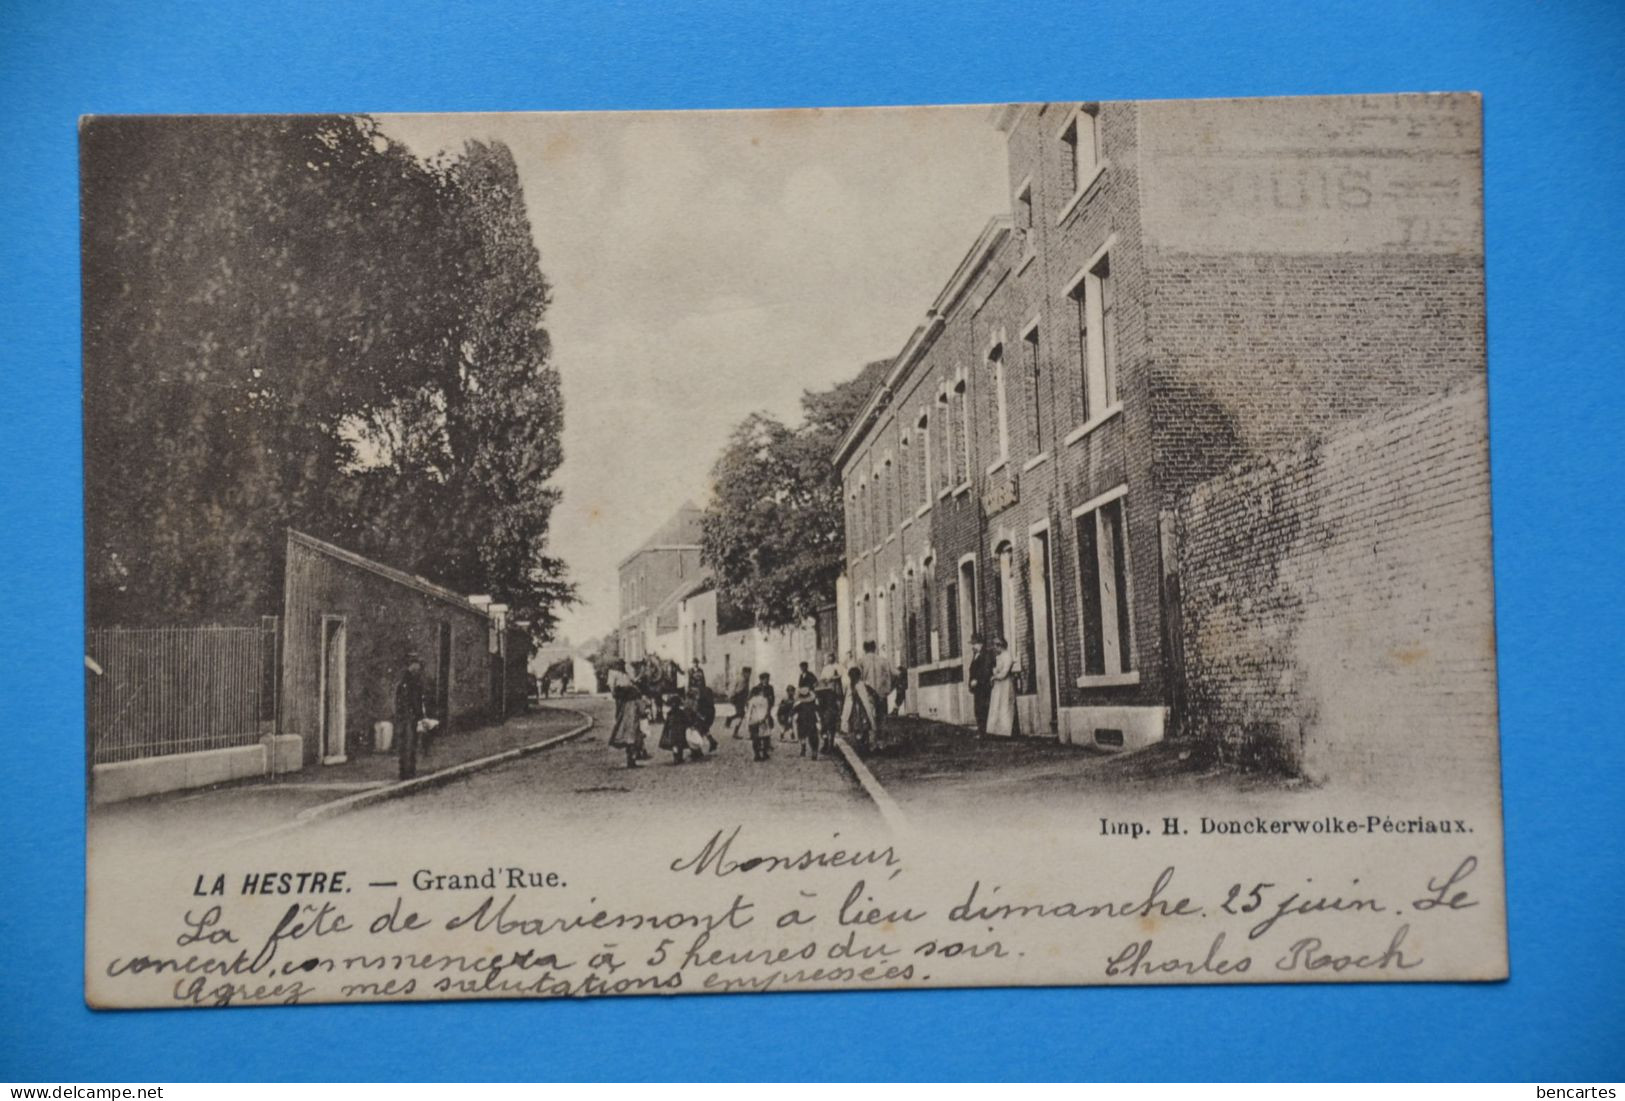 La Hestre 1905: Grand'Rue Très Animée. - Manage